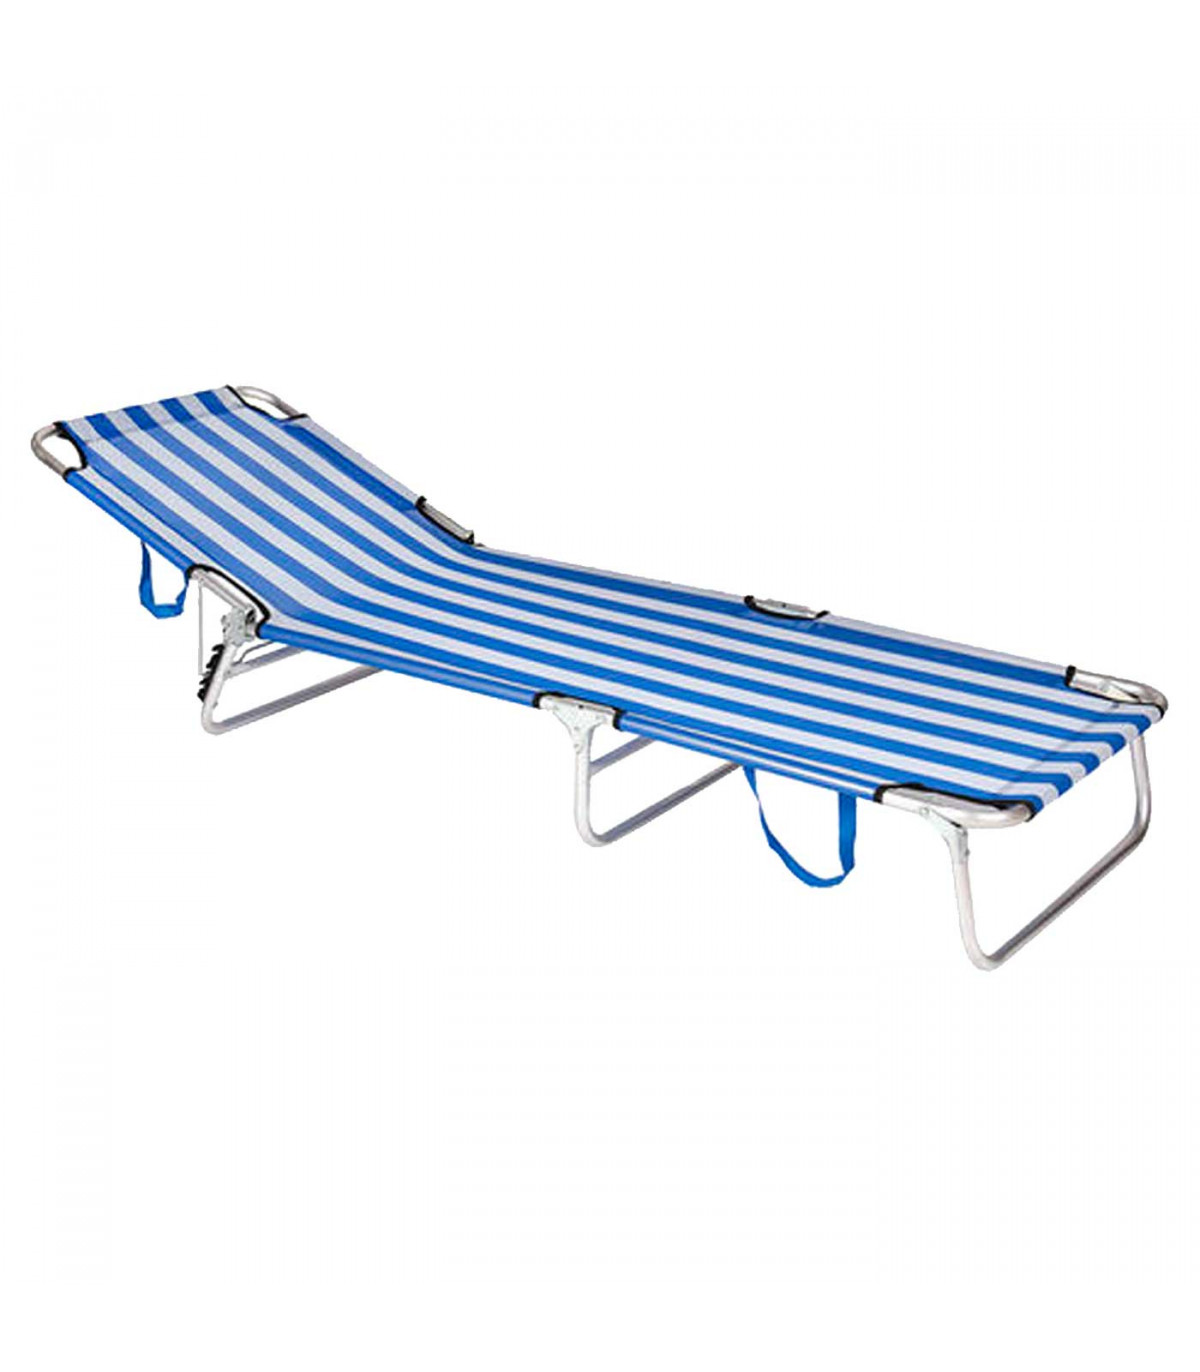 Bestway - Tumbona plegable de acero, reclinable, tejido Oxford, tejido  resistente. Color azul - blanco. 55 x 24 x 187 cm.